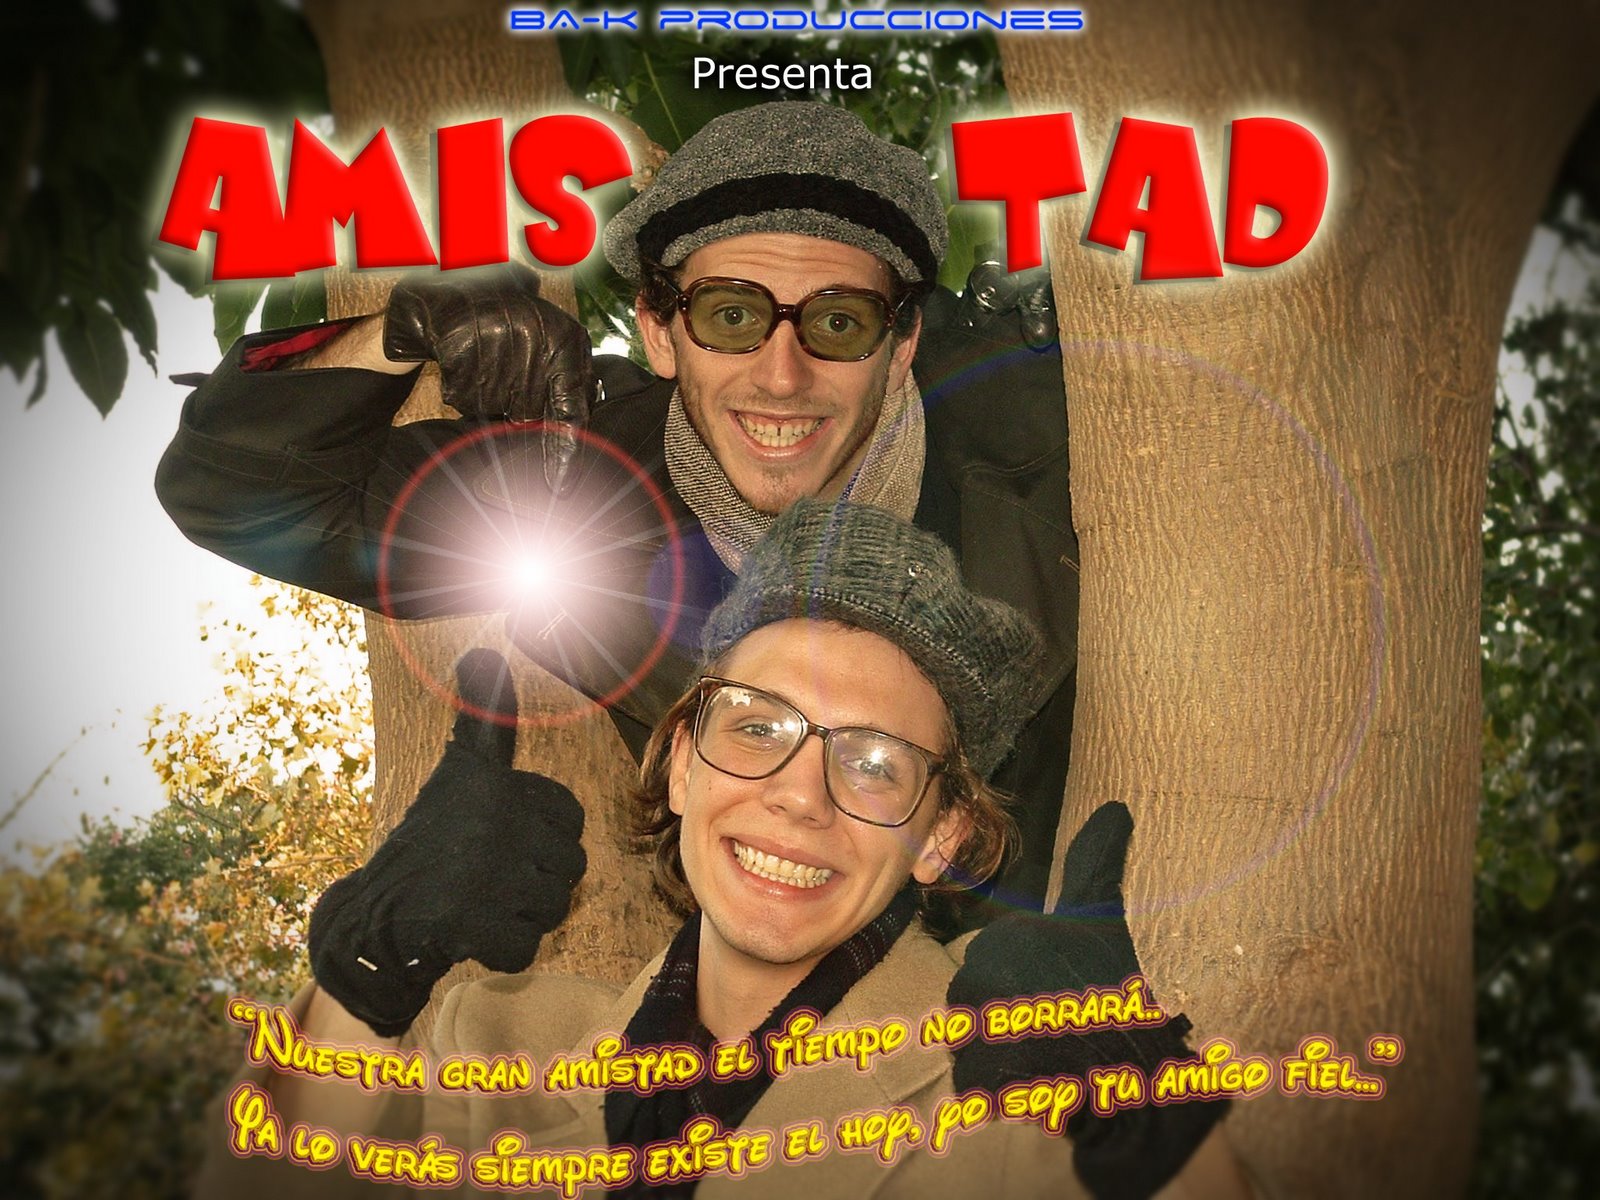 Comedia Musical "Amis-Tad"